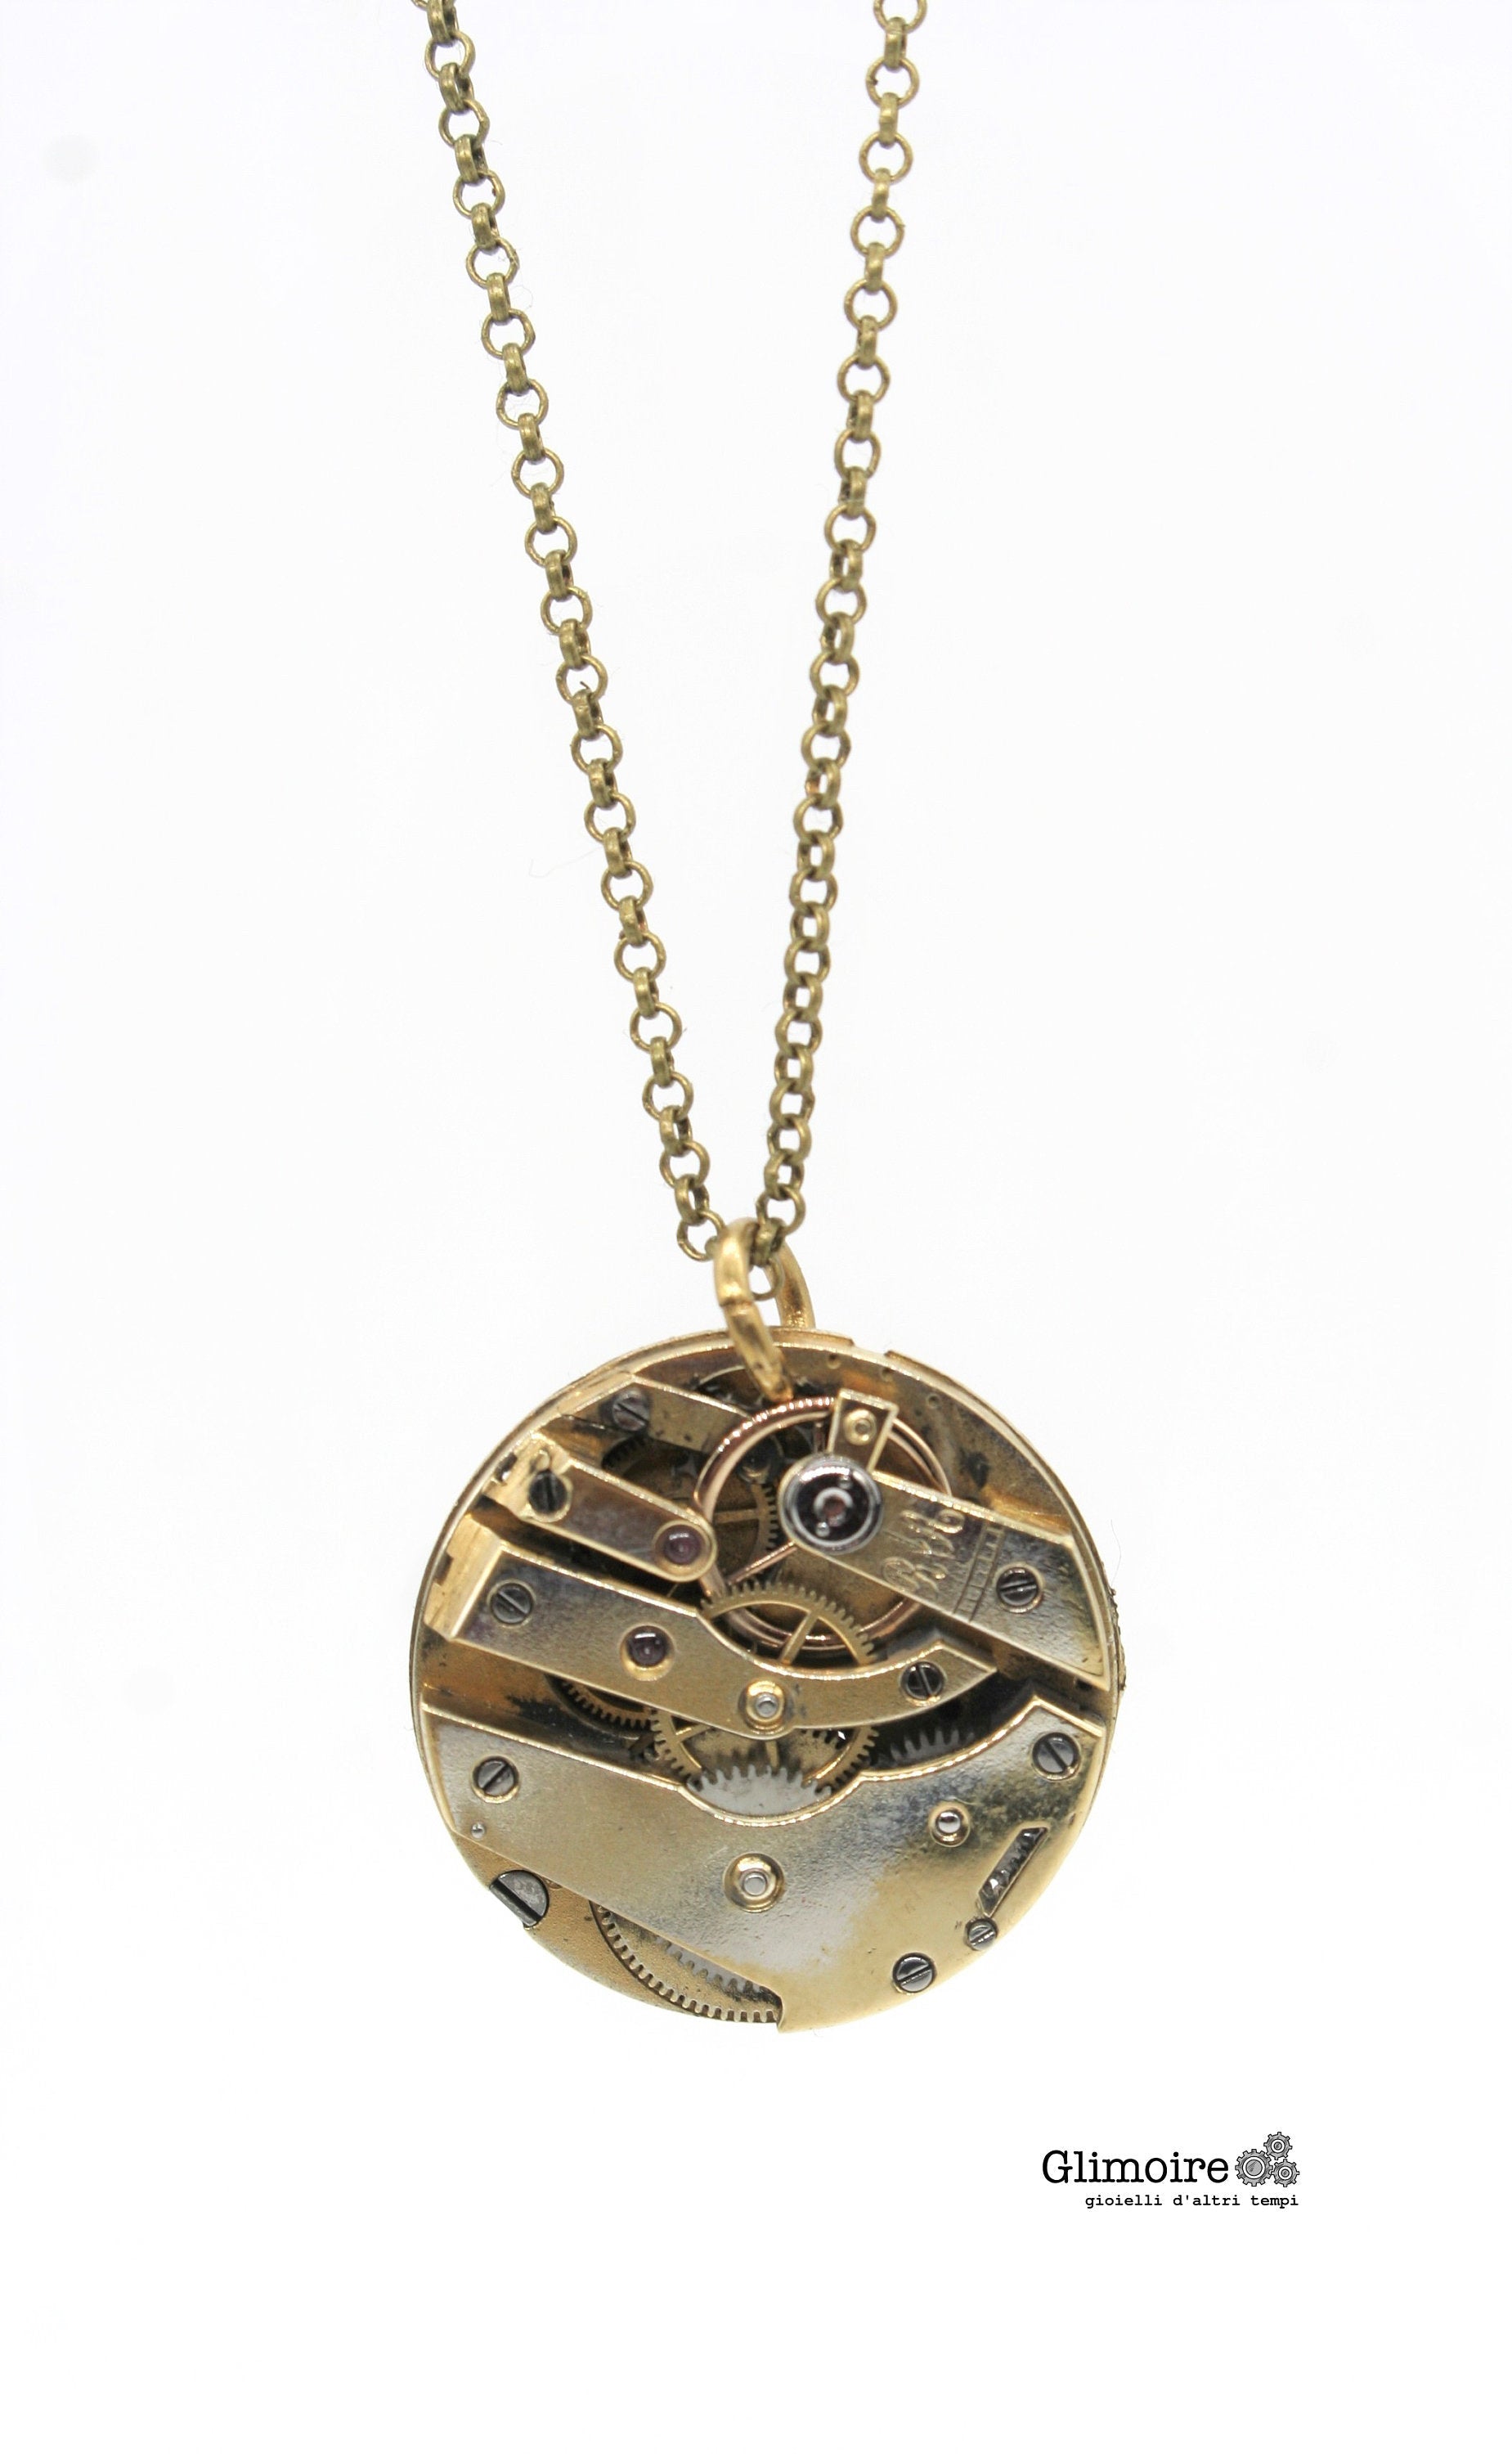 Collana con movimento vintage di orologio da taschino - ciondolo con meccanismo di orologio svizzero anni '30 art.286 - Glimoire